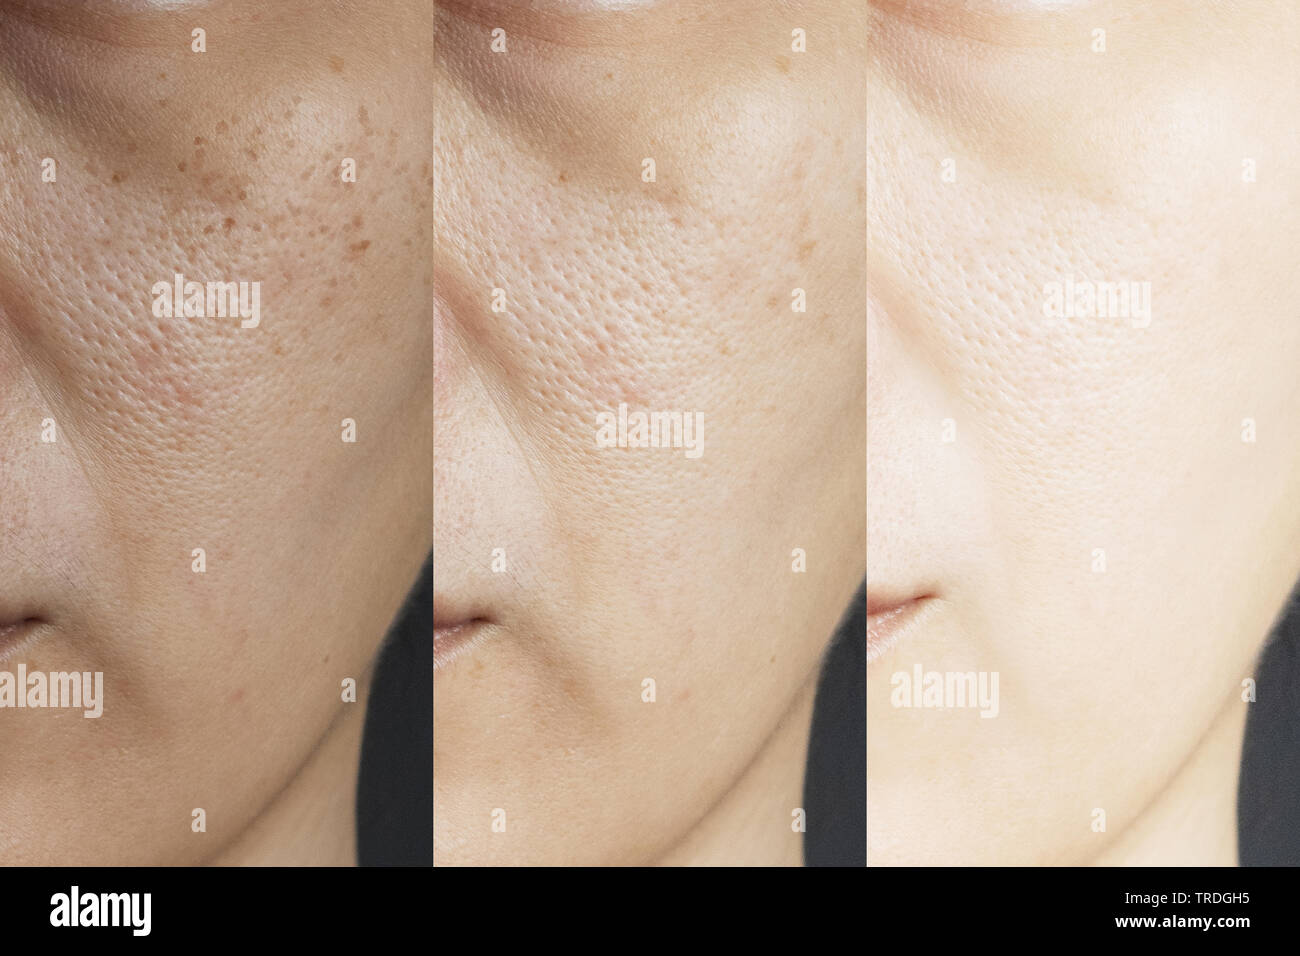 Tres imágenes en comparación efecto antes y después del tratamiento. La piel con problemas de pecas , pore , las pieles desvitalizadas y arrugas, antes y después del tratamiento t Foto de stock